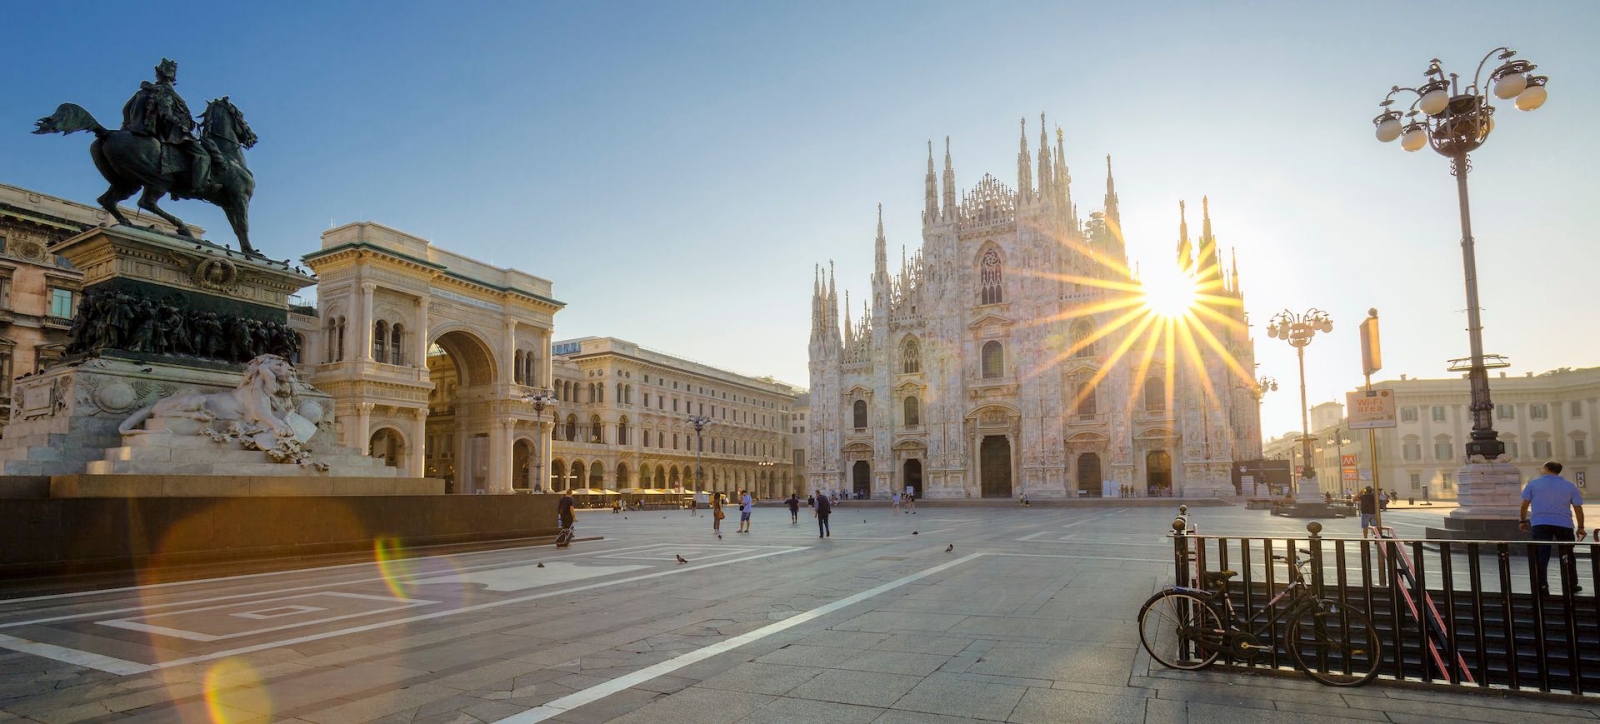 Berühmter Dom in Mailand bei Sonnenaufgang